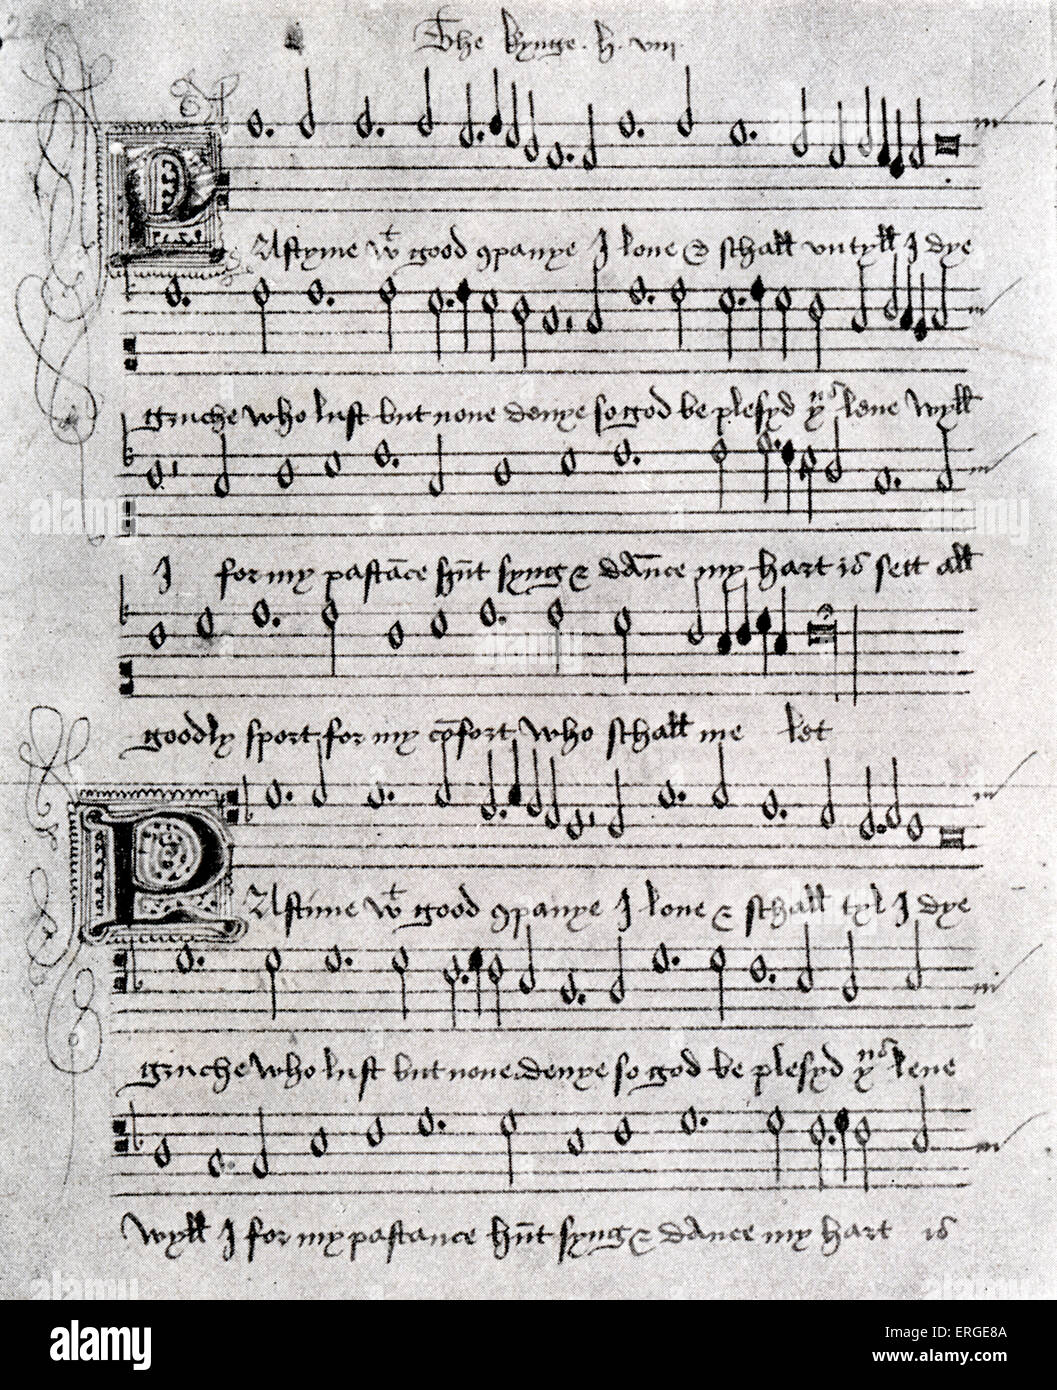 Zeitvertreib mit Good Company - Madrigal. Partitur für ein dreiteiliges Madrigal angeblich von Heinrich VIII. von geschrieben worden sein Stockfoto